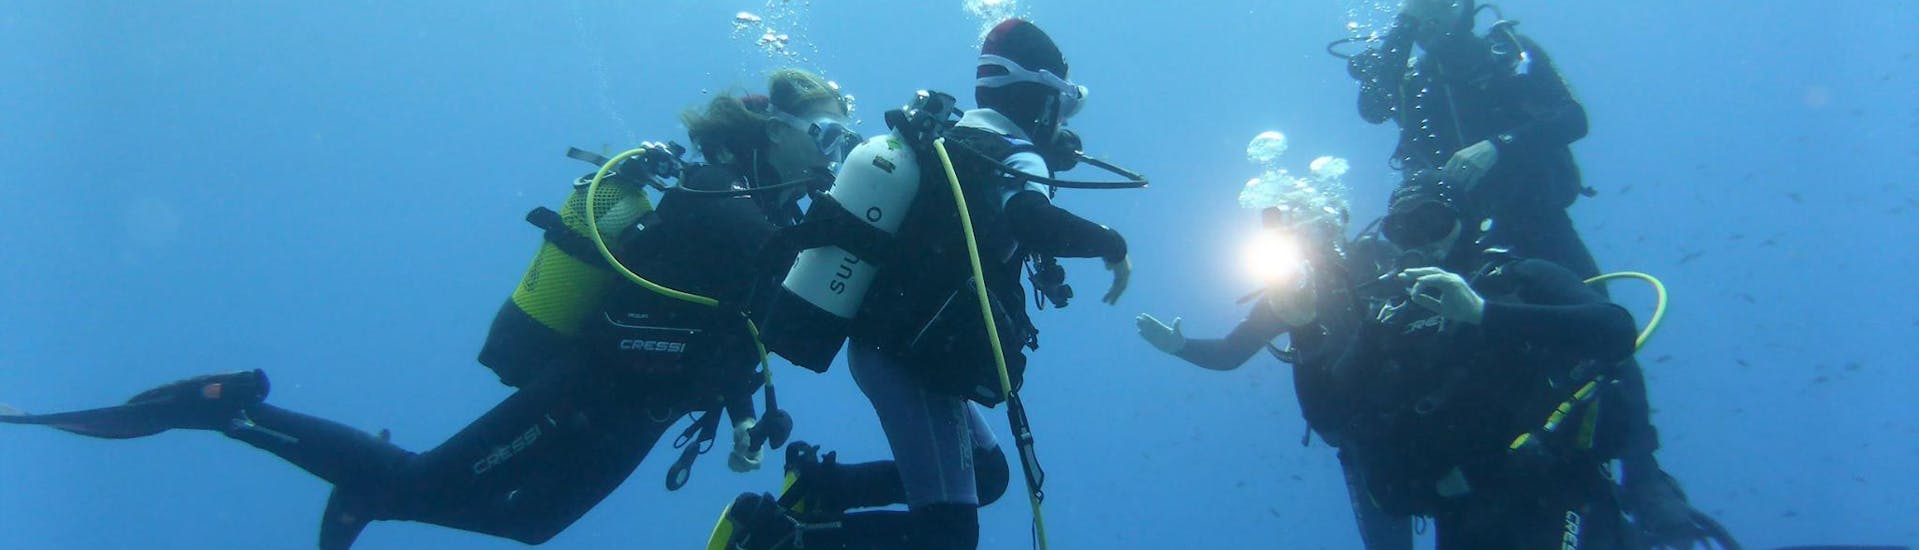 3 personen doen reddingsduiken tijdens de PADI Divemaster Cursus voor gecertificeerde reddingsduikers bij Balear Divers.